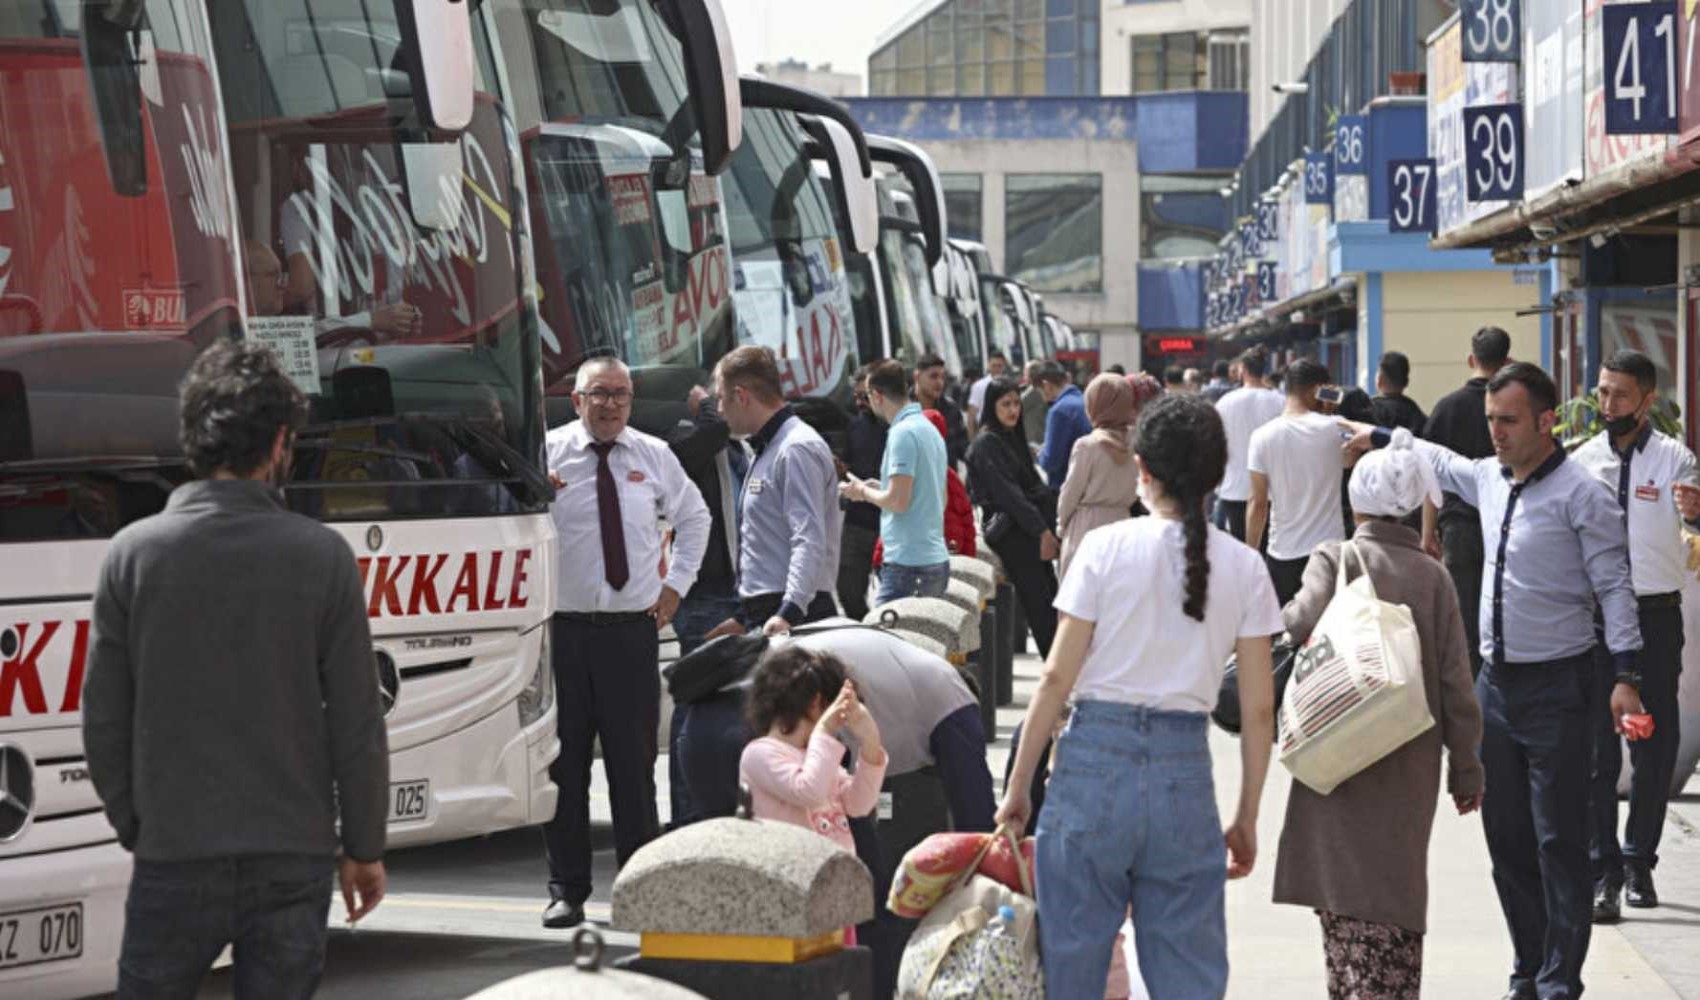 İstanbul'da bayram öncesi otobüs biletleri tükendi, ek seferler konuldu